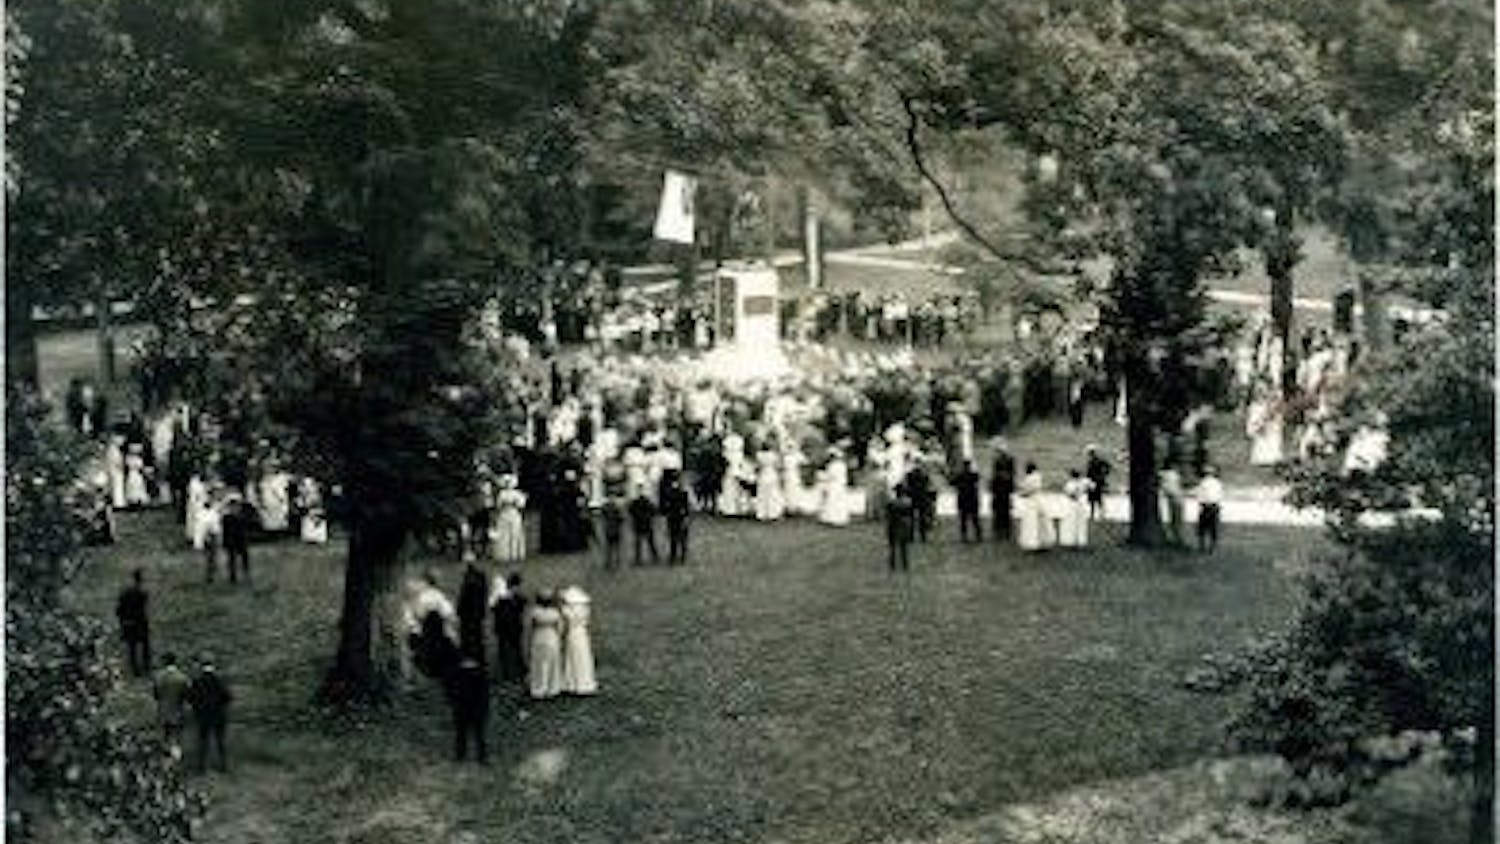 Silent Sam unveiling, June 2, 1913